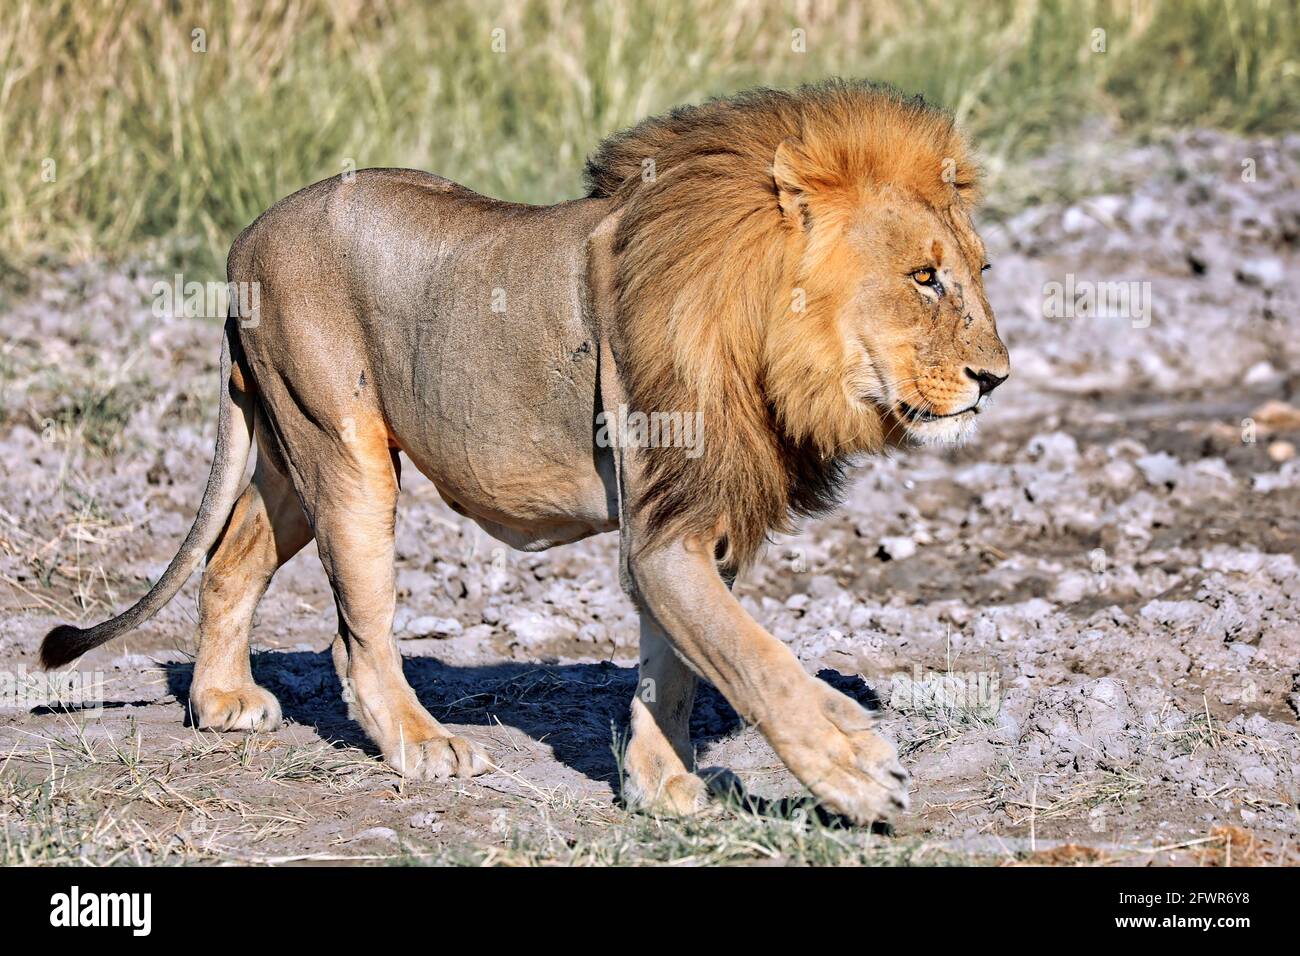 lion in the morning light, Etosha National Park, Namibia Stock Photo